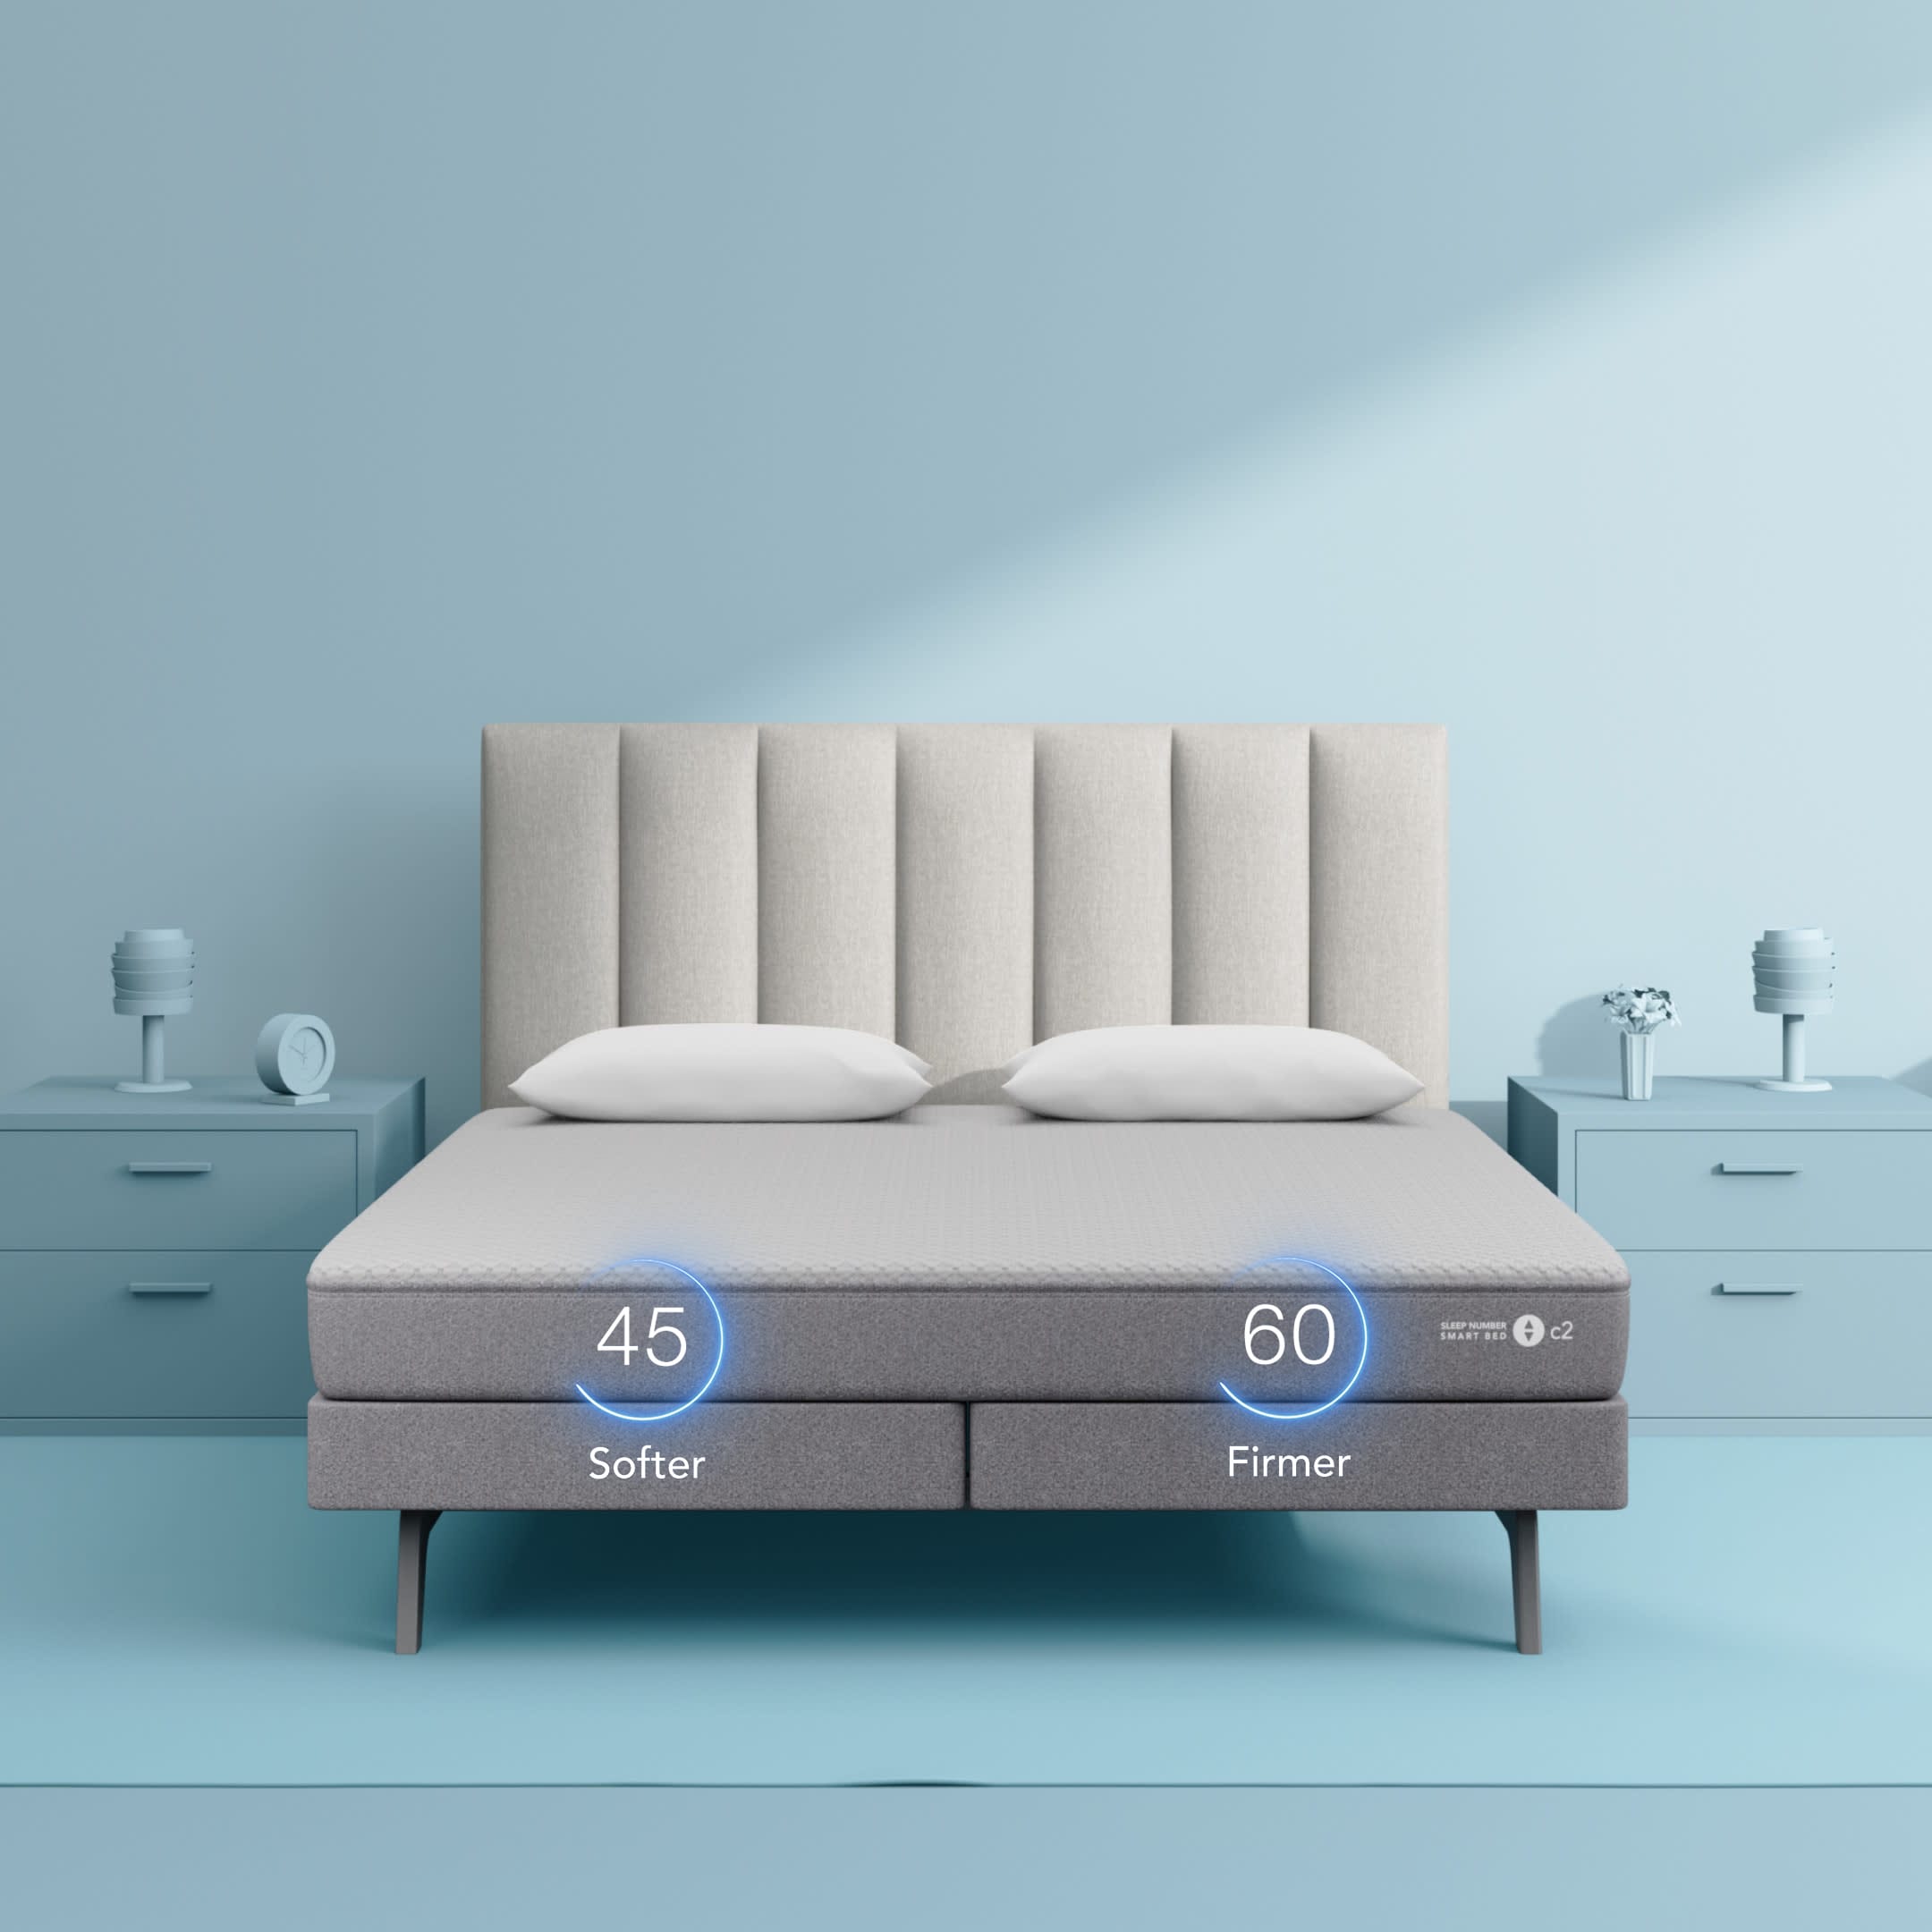 c2 Smart Bed - Sleep Number